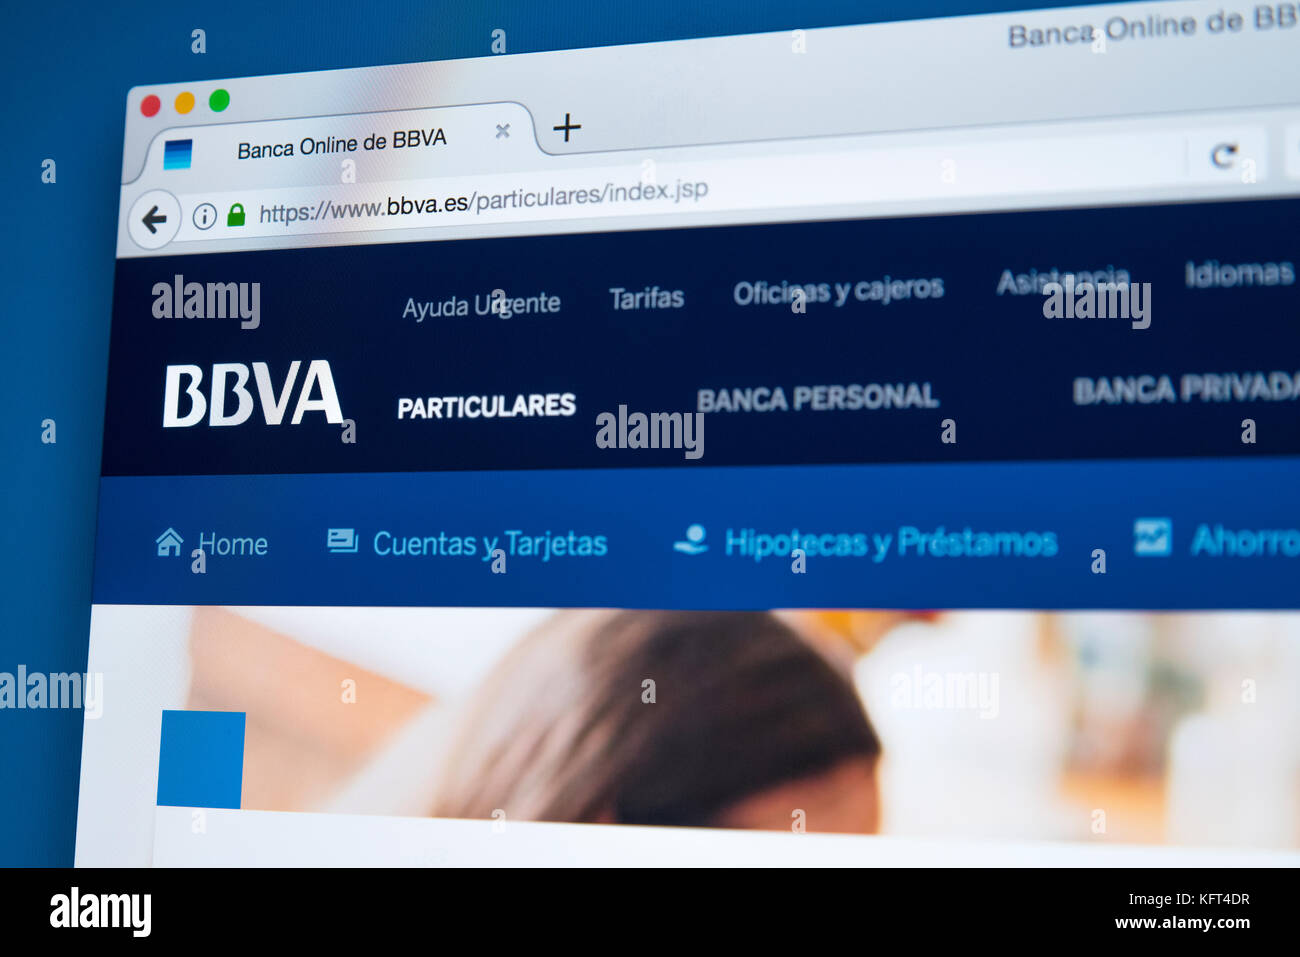 Londres, Reino Unido - 17 de octubre de 2017: la página de inicio del sitio web oficial de BBVA, la multinacional Grupo bancario español, el 17 de octubre de 2017. Foto de stock